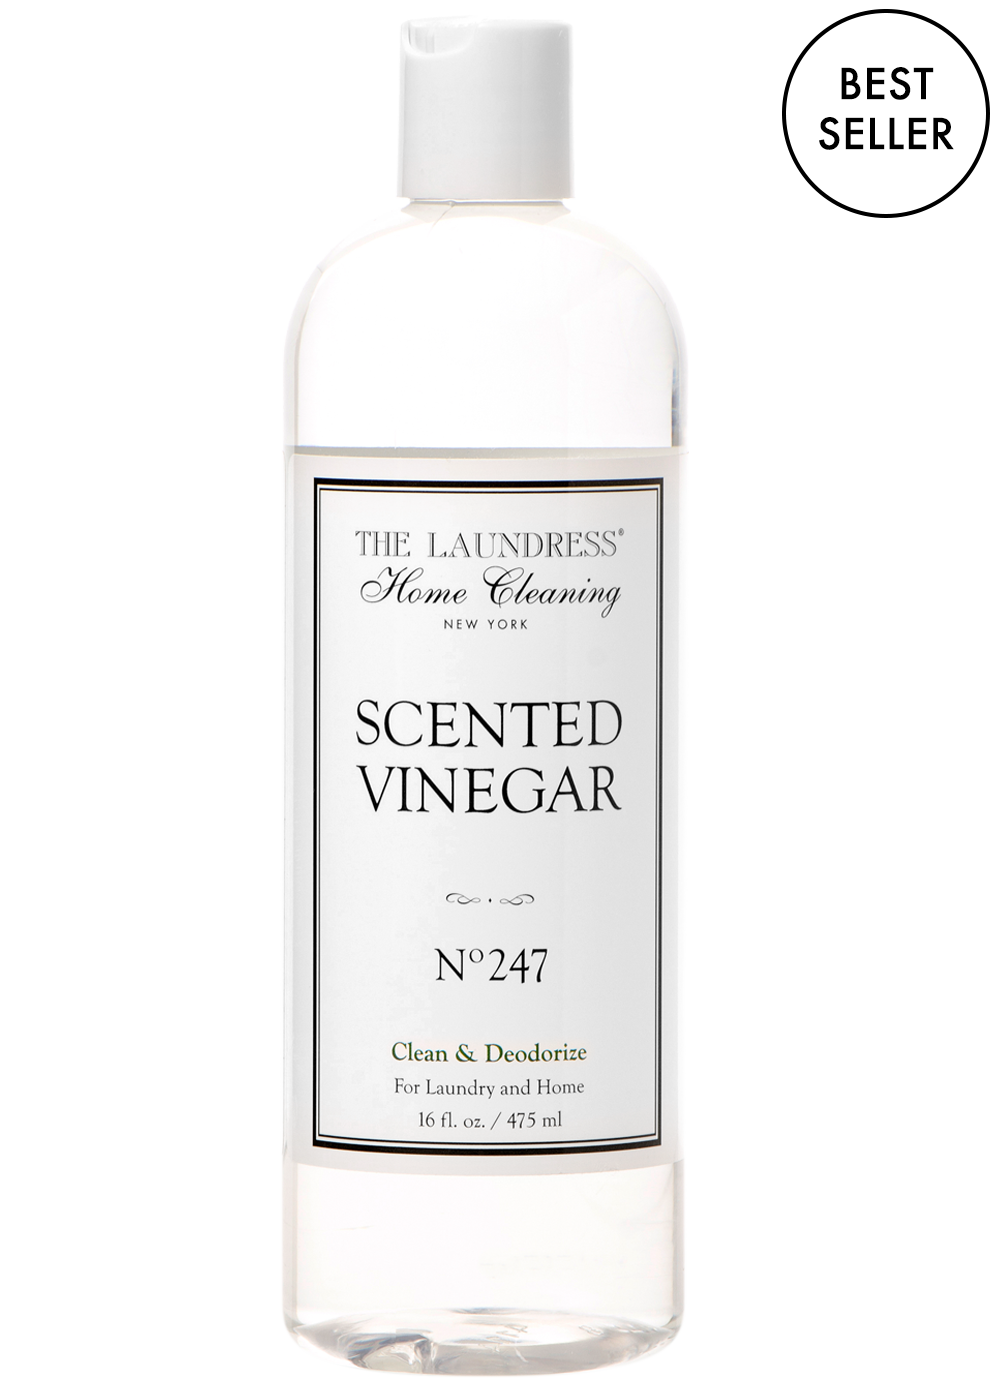 scented vinegar 16 fl oz